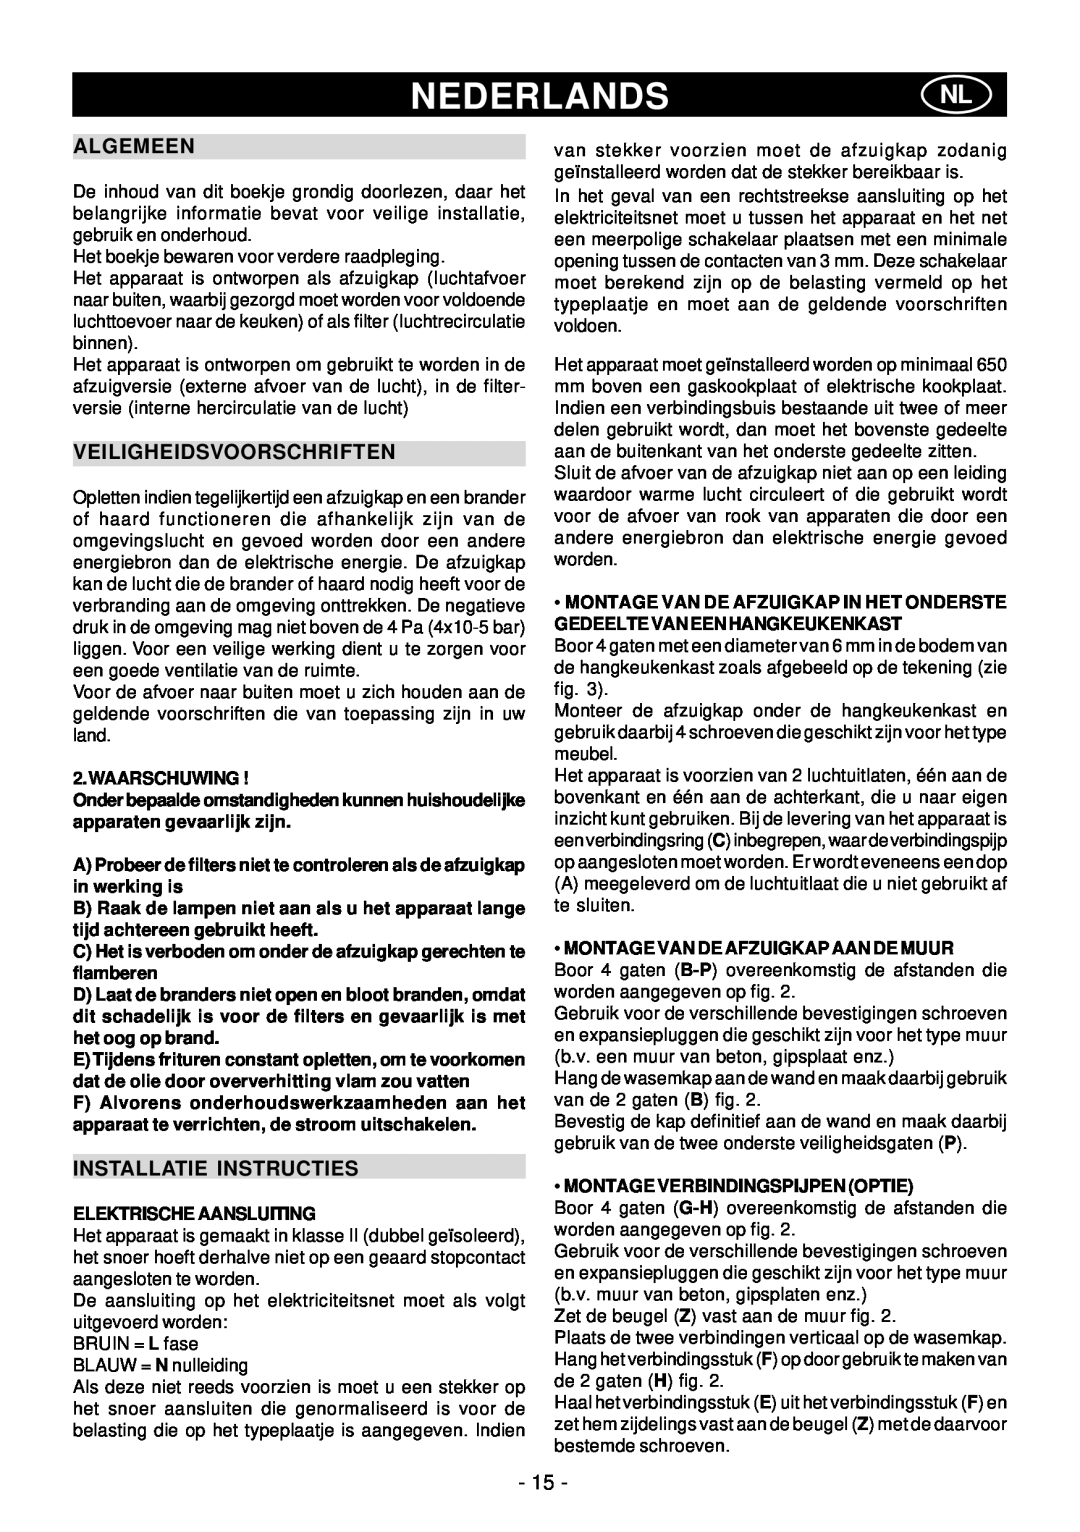 Elitair PN-36 manual Nederlandsnl, Algemeen, Veiligheidsvoorschriften, Installatie Instructies 